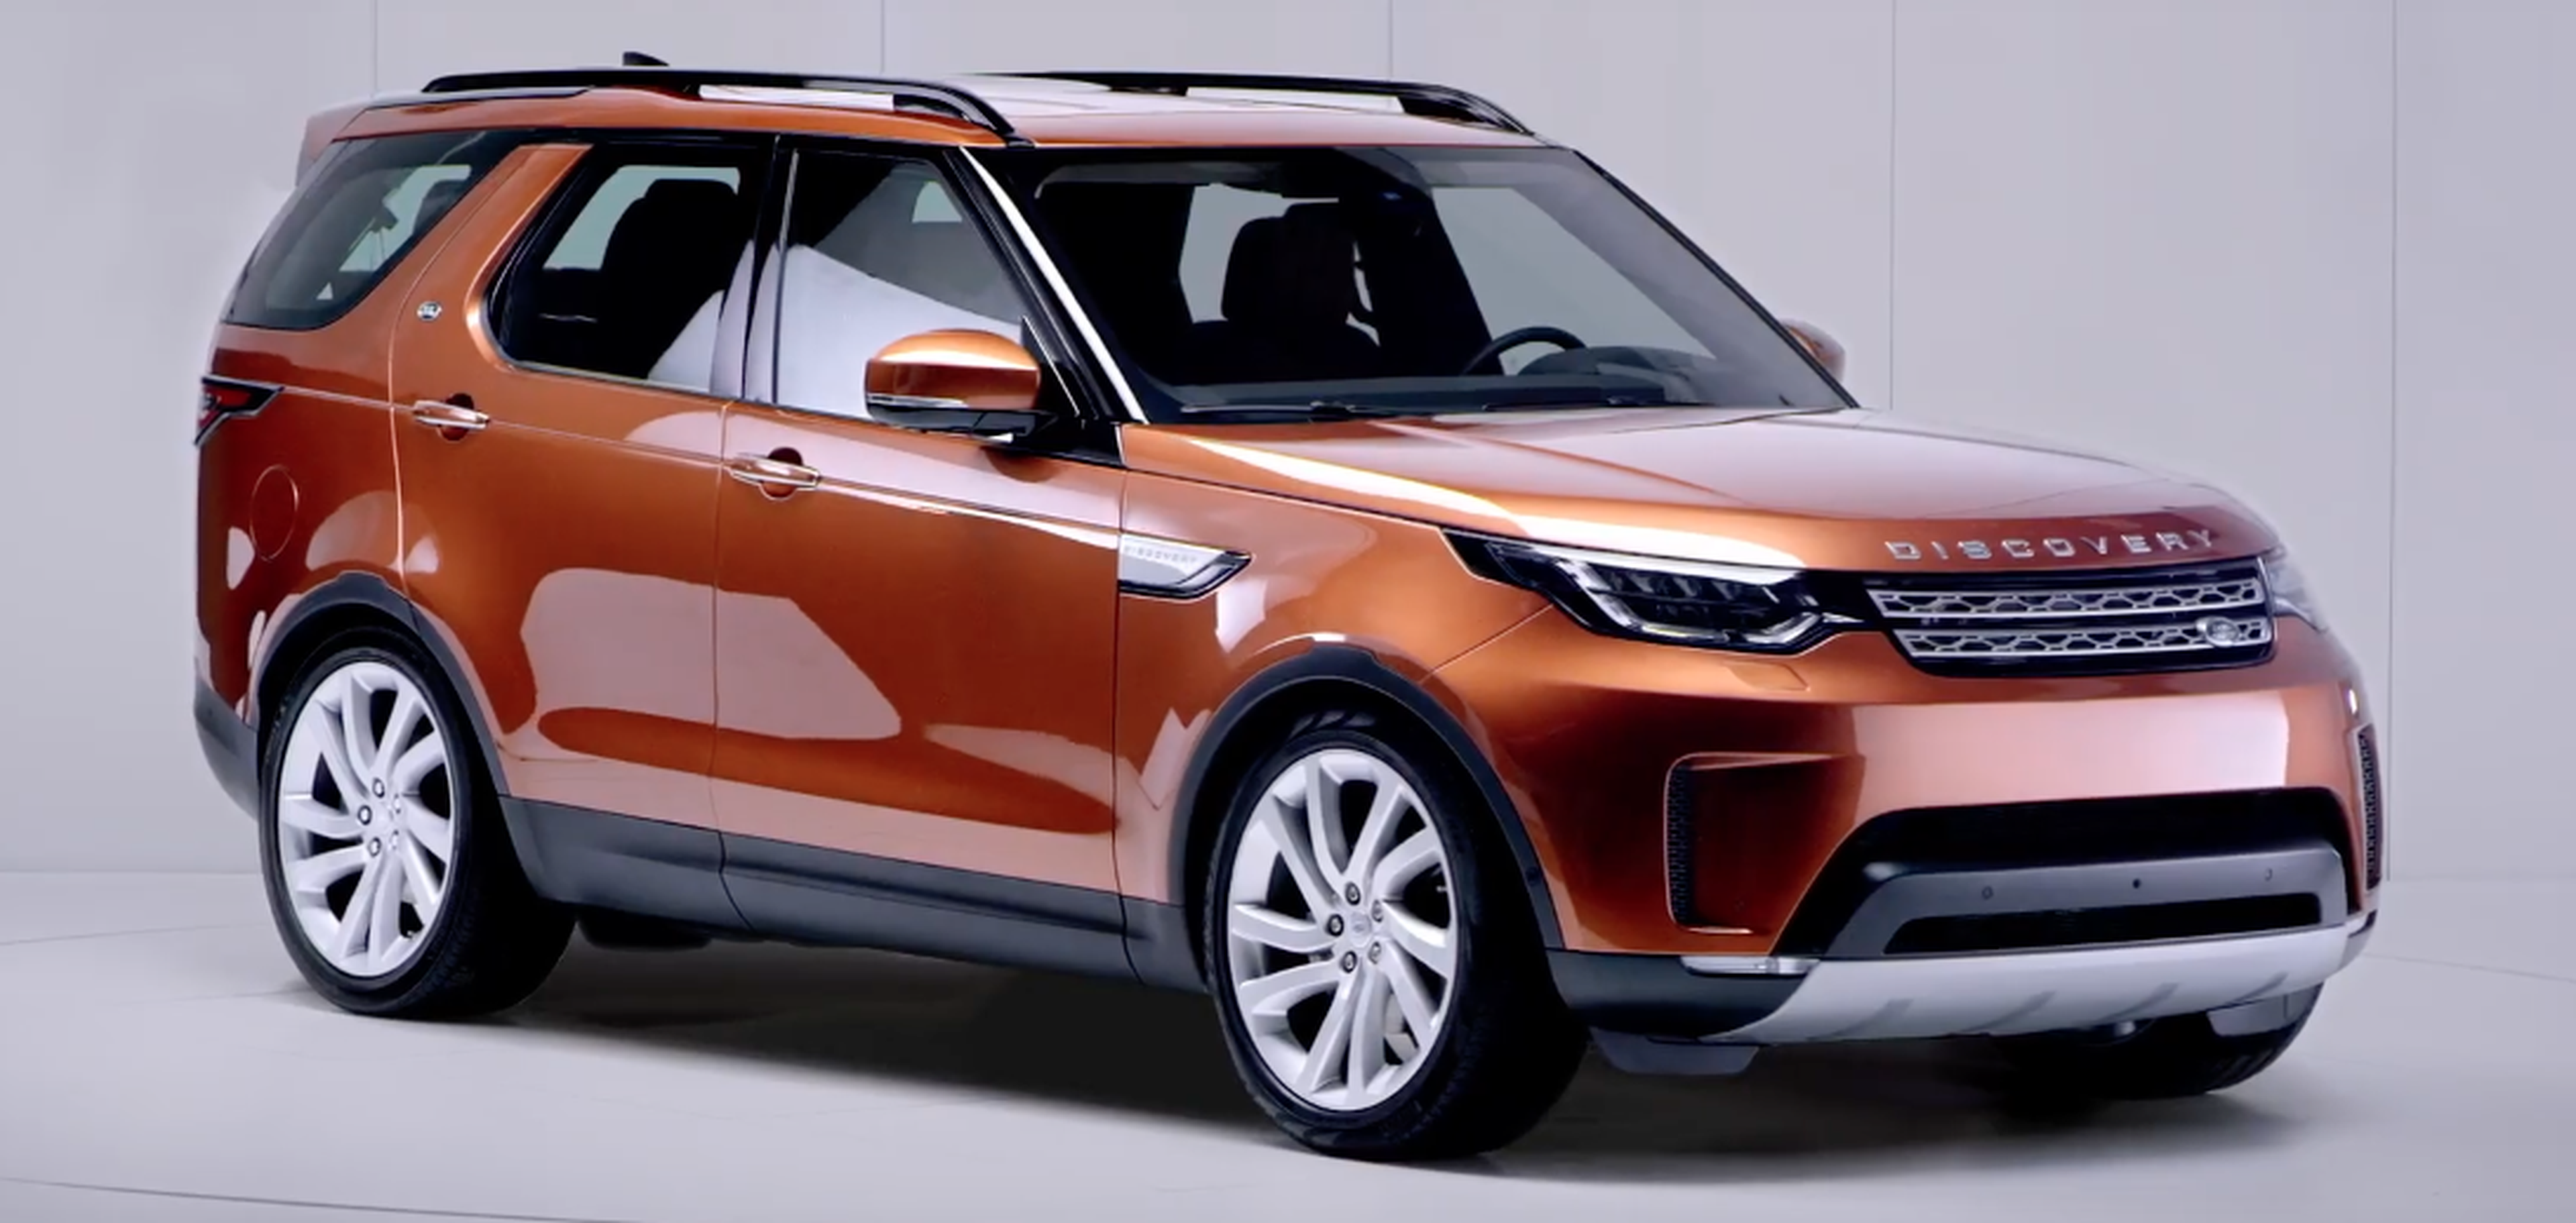 VÍDEO: Descubre cómo es el nuevo Land Rover Discovery 2017